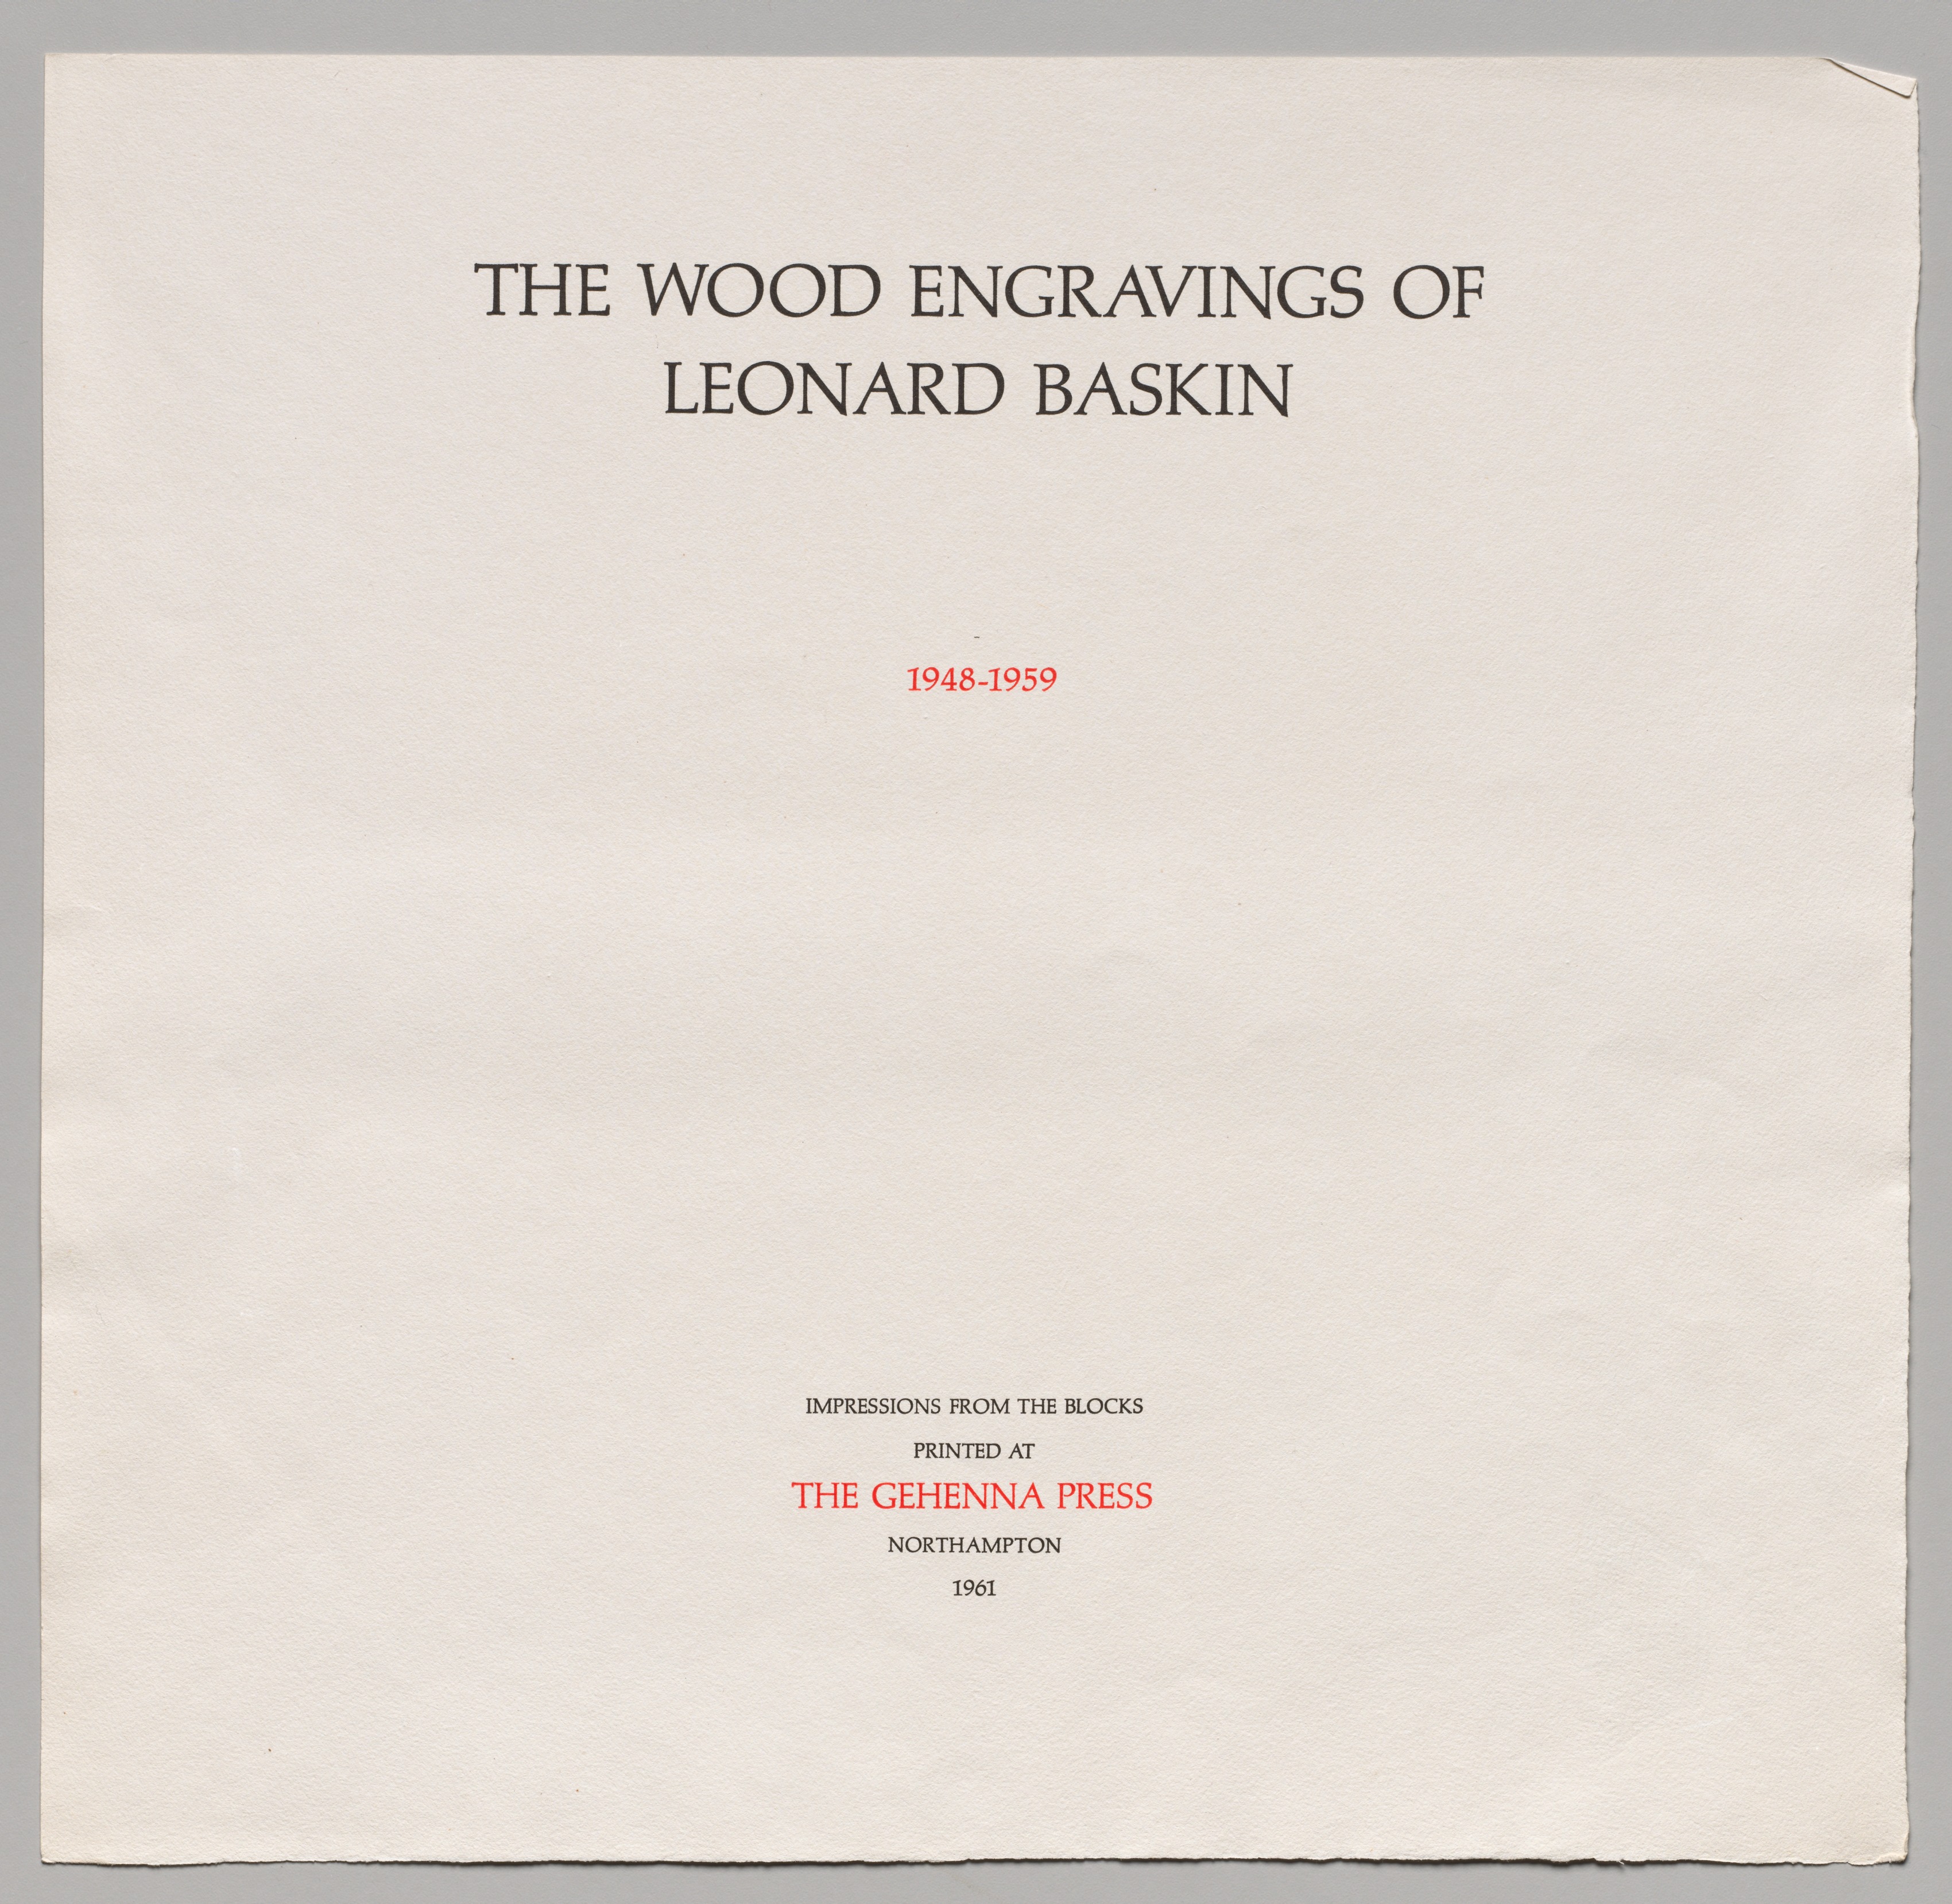 The Wood Engravings of Leonard Baskin